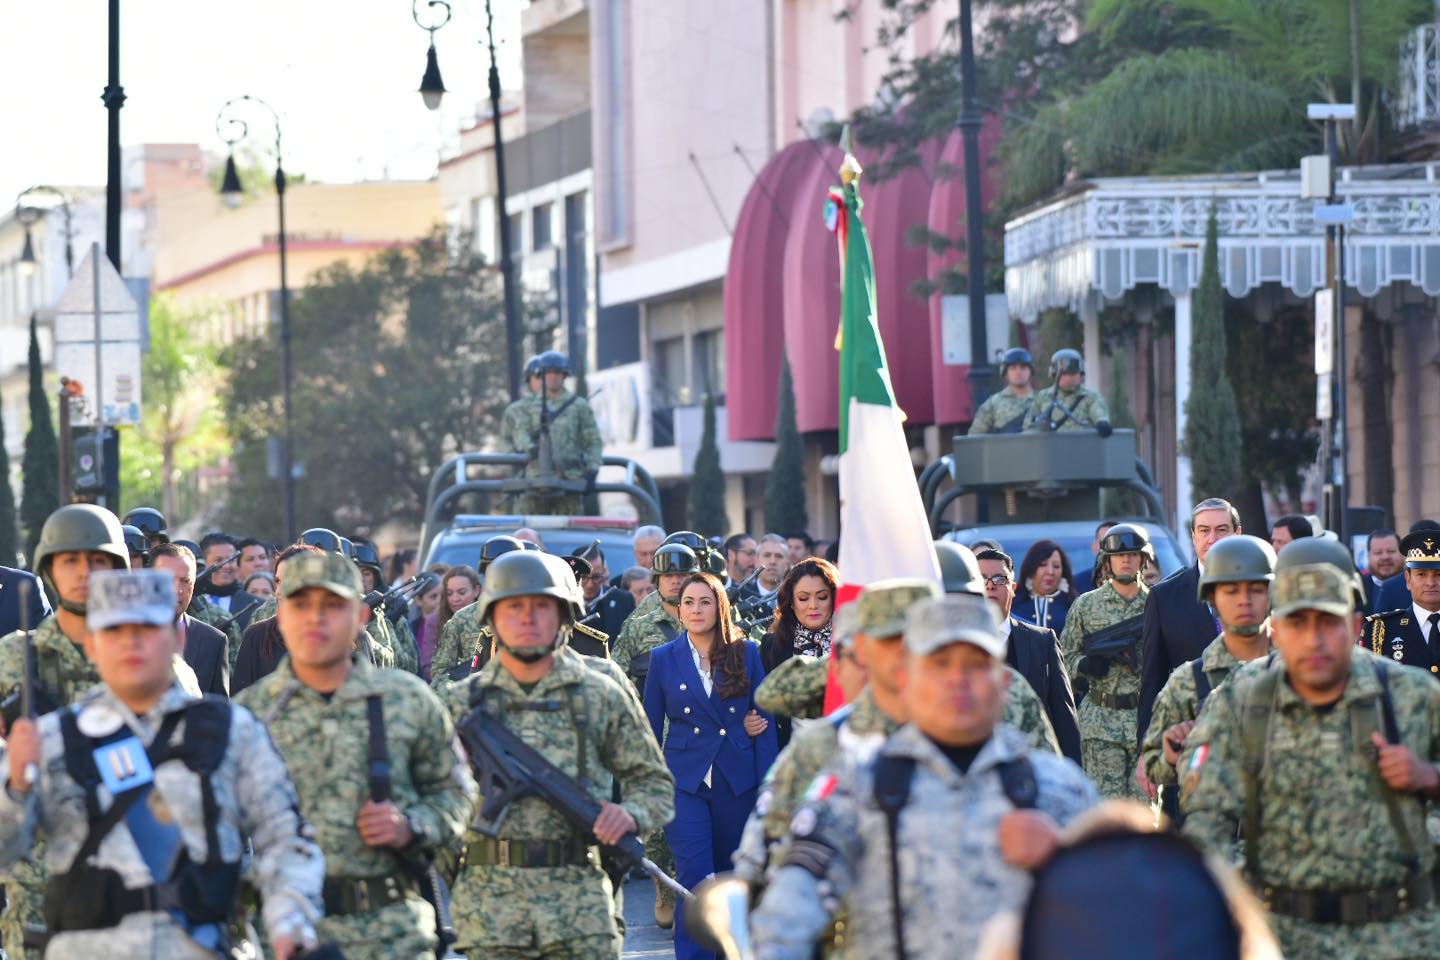 CON HECHOS SEGUIREMOS DEMOSTRANDO NUESTRA LEALTAD A MÉXICO Y A AGUASCALIENTES: TERE JIMÉNEZ